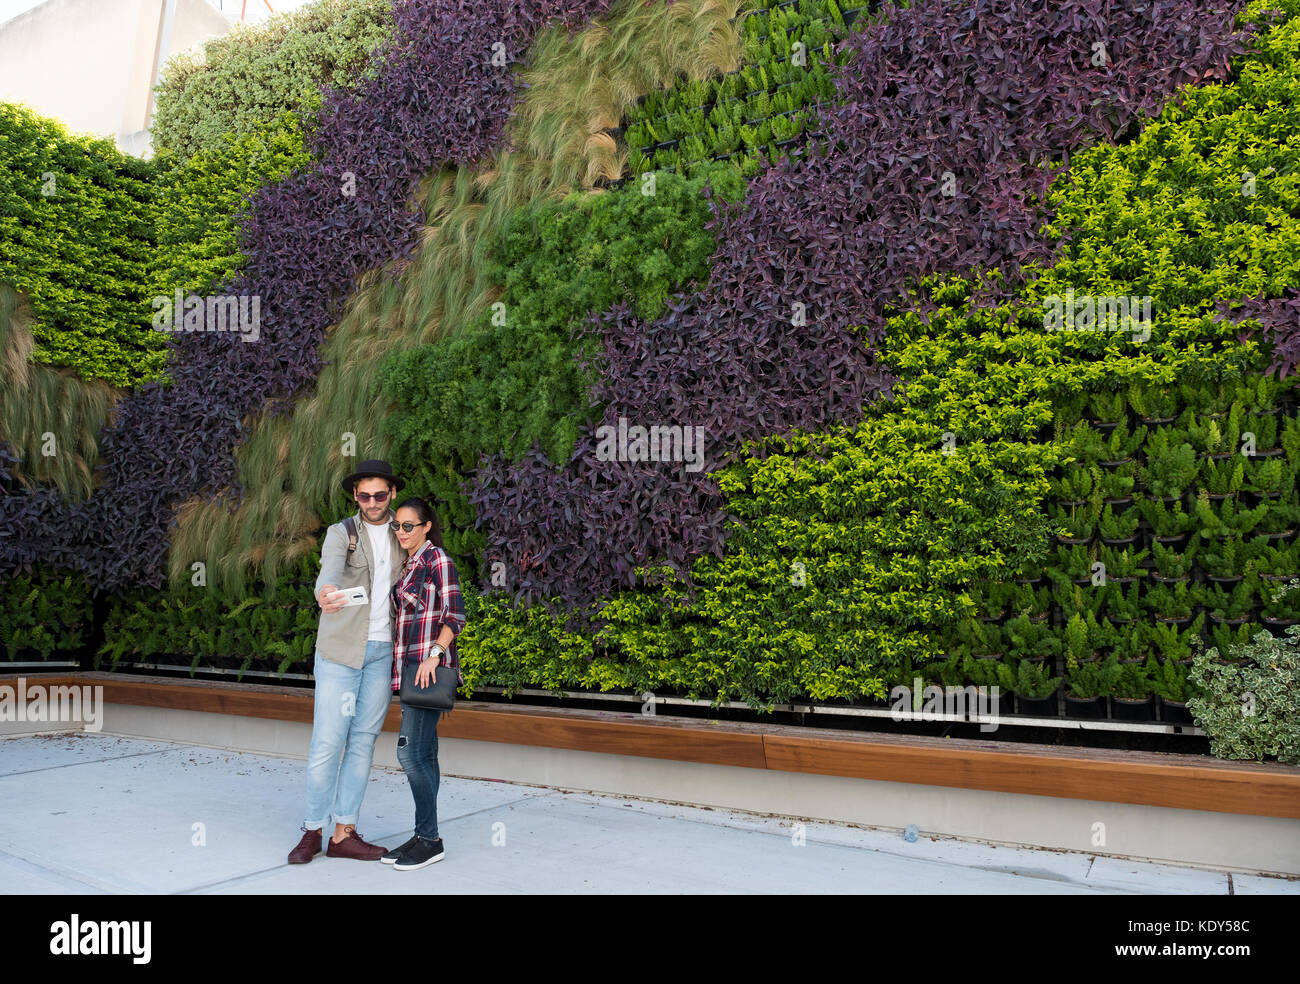 Il verde muro vivente in Paphos città vecchia, Cipro. Il giardino verticale è stato creato dal progettista di giardini Thanasis Evripidou e fatto fuori 2,244 piante. Foto Stock